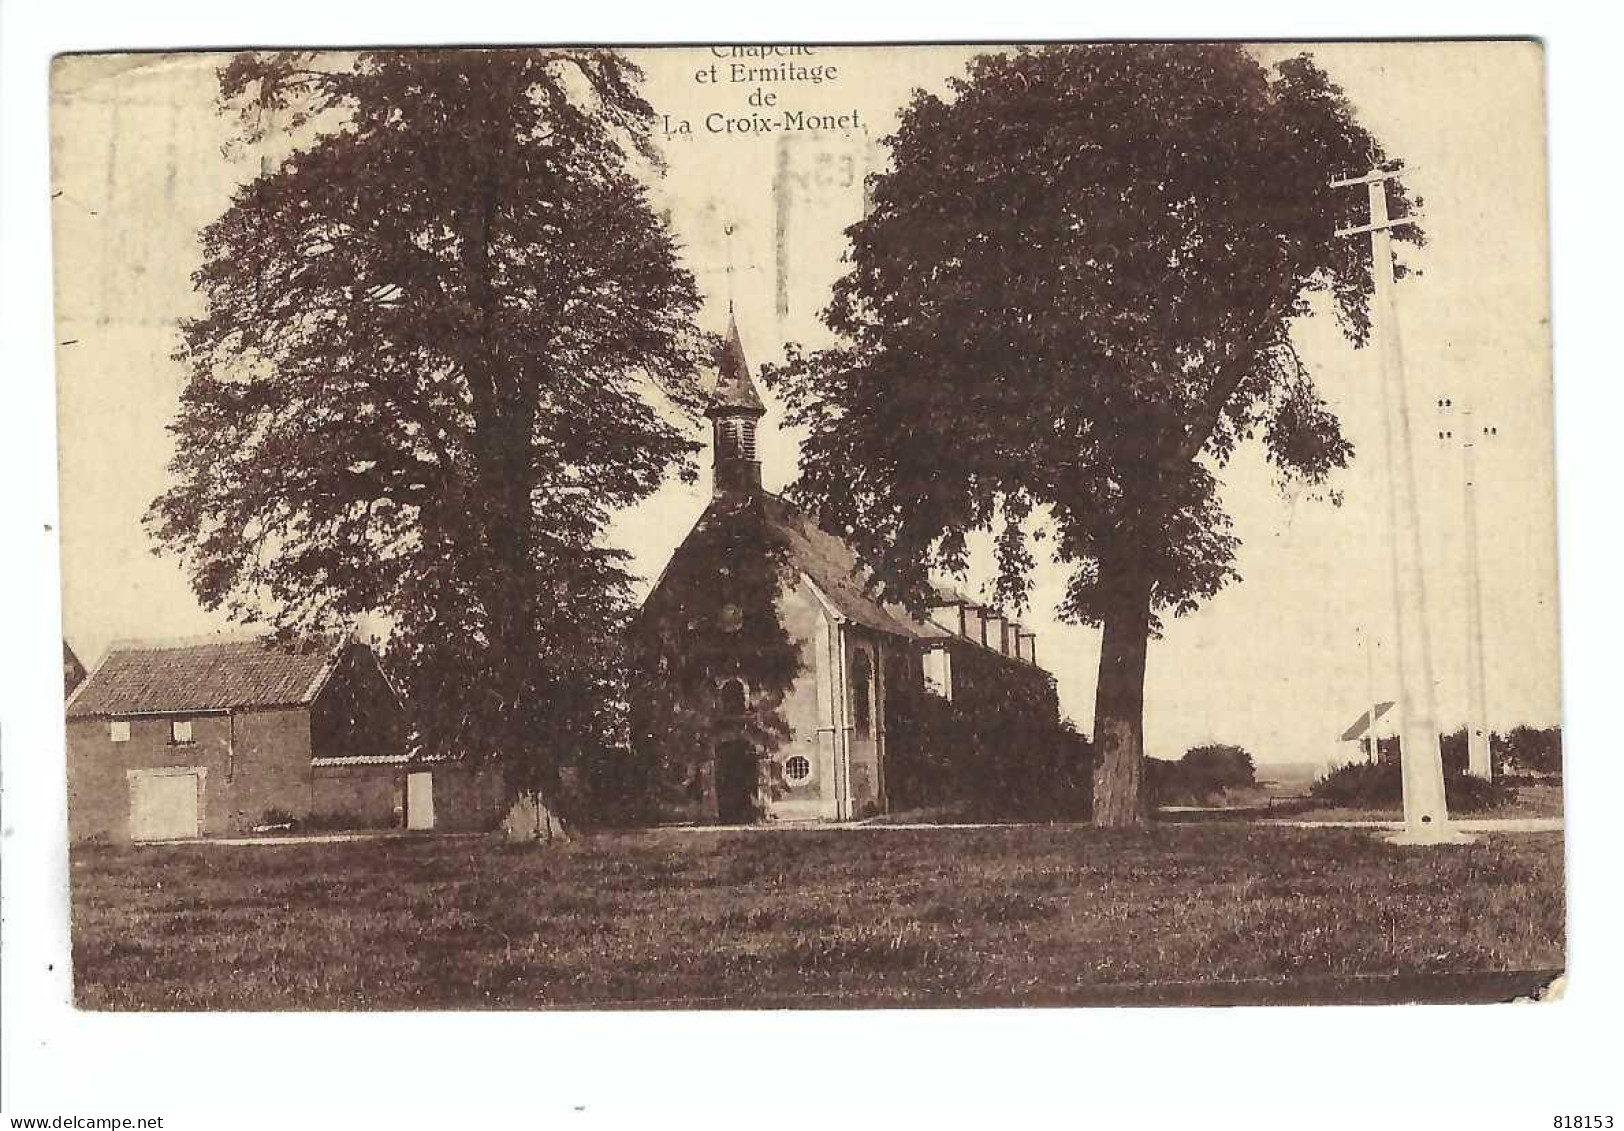 La Croix-Monet    Chapelle Et Ermitage  1926 - Eghezee